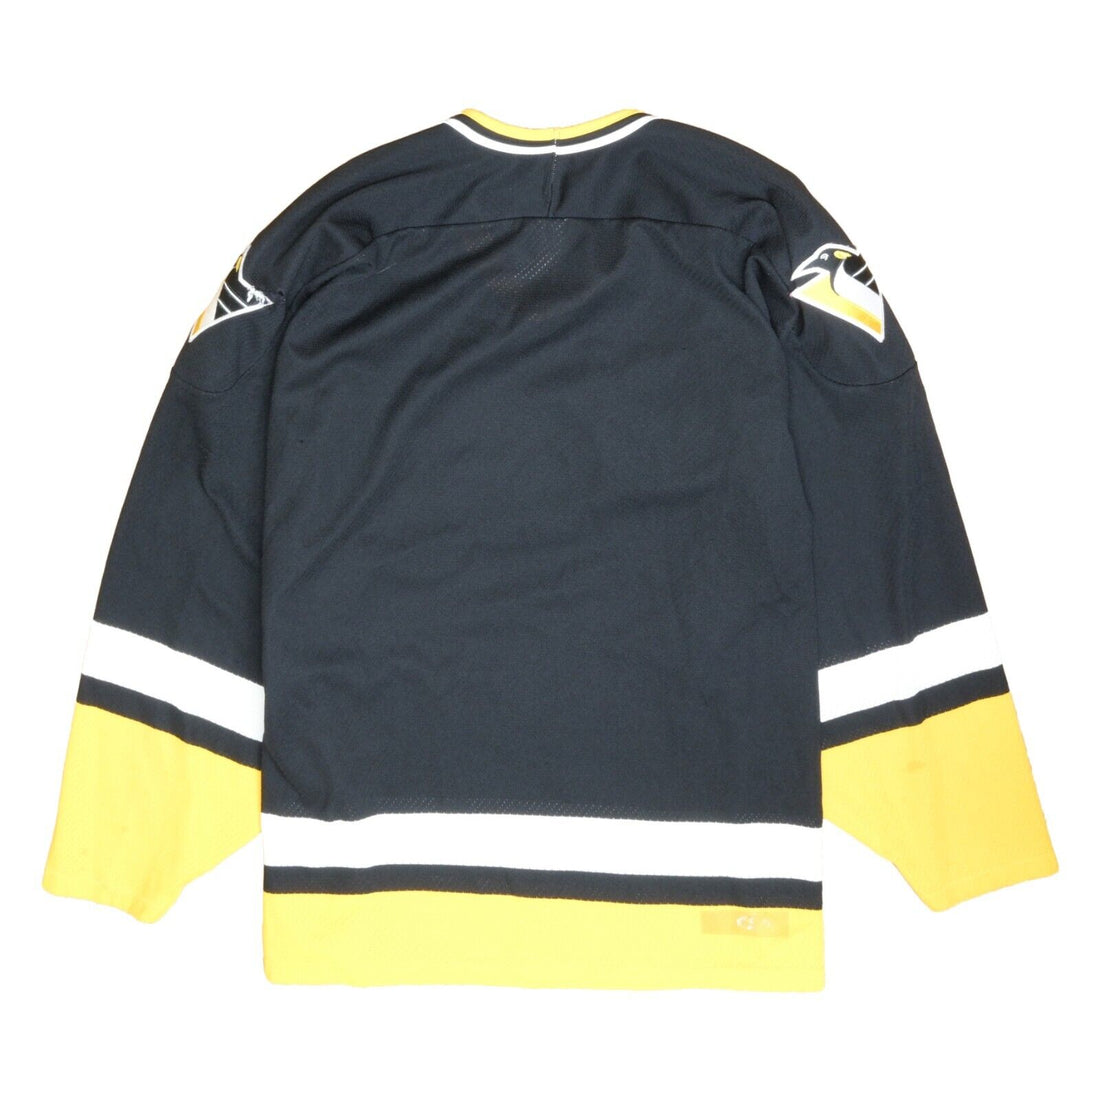 Vintage CCM Label - PITTSBURGH PENGUINS (LARGE) Hockey Jersey BLK